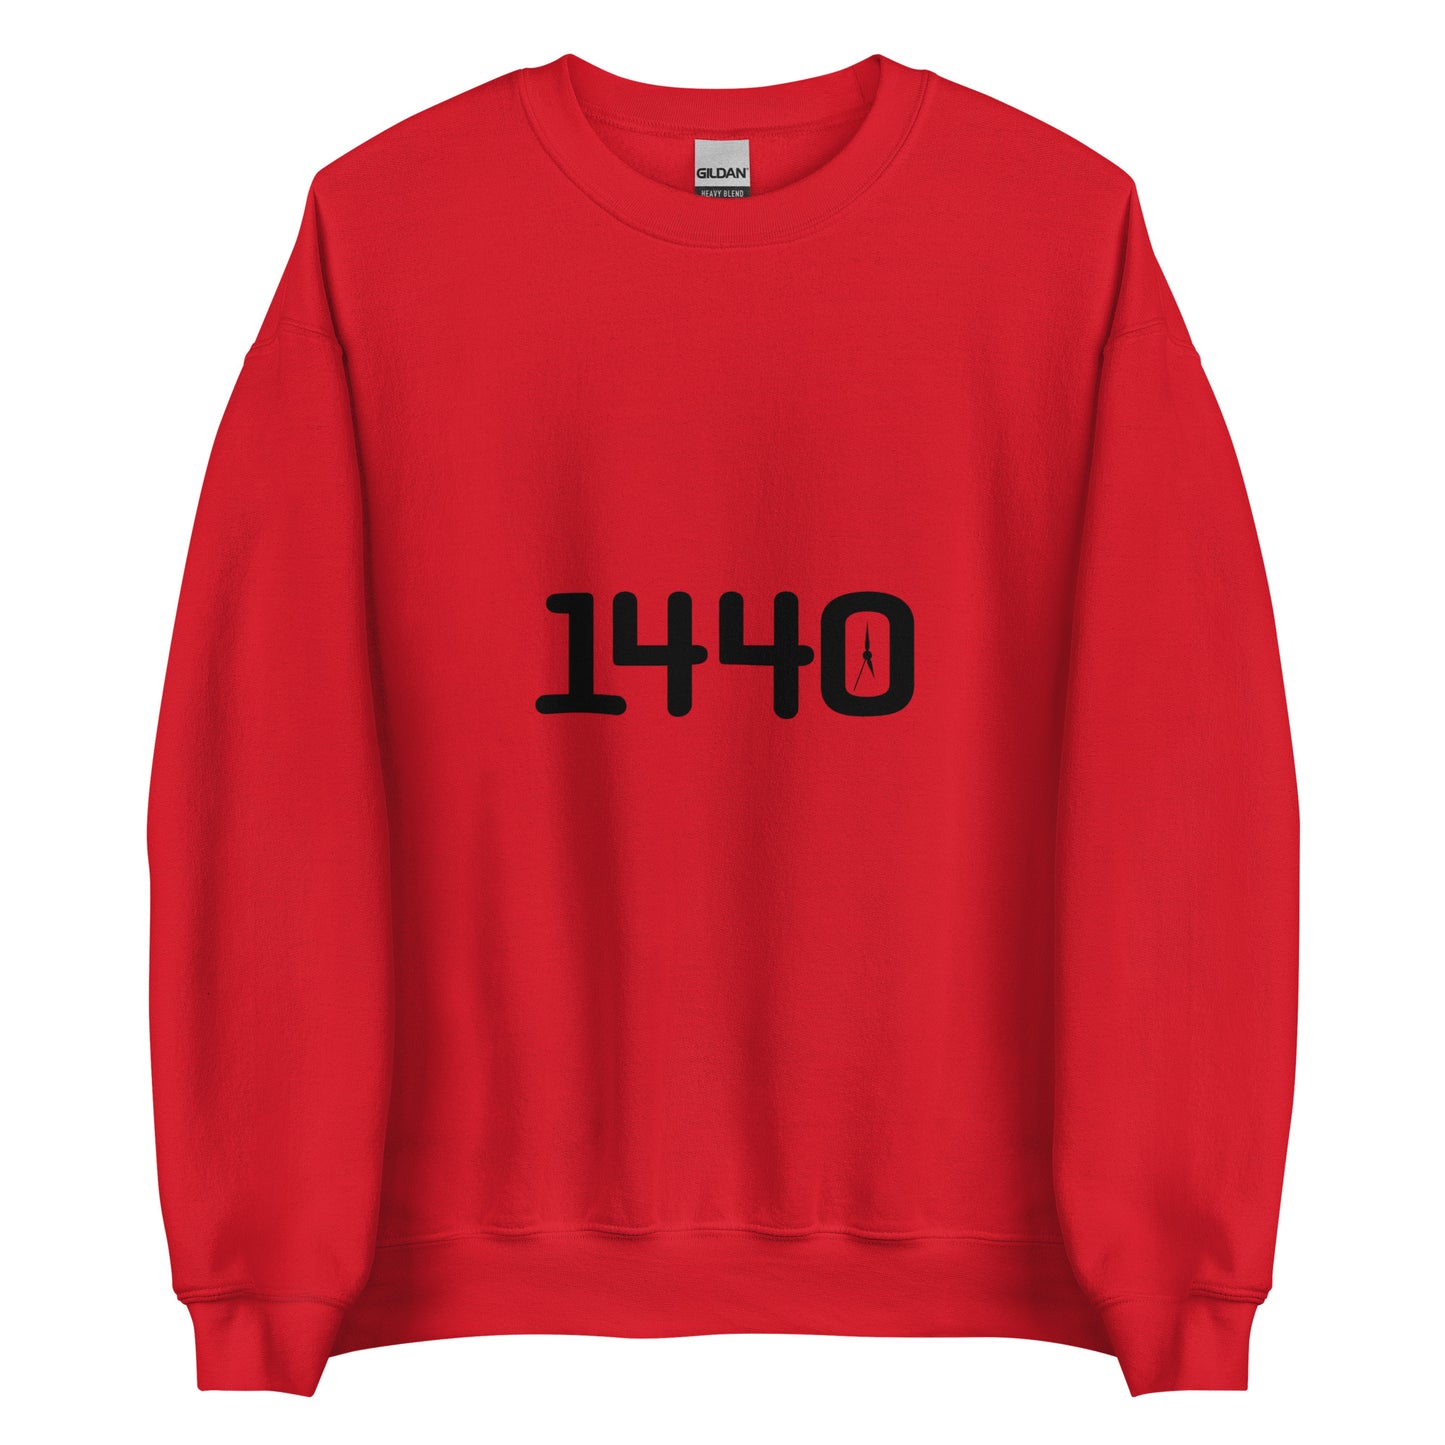 1440 - Unisex Sweatshirt